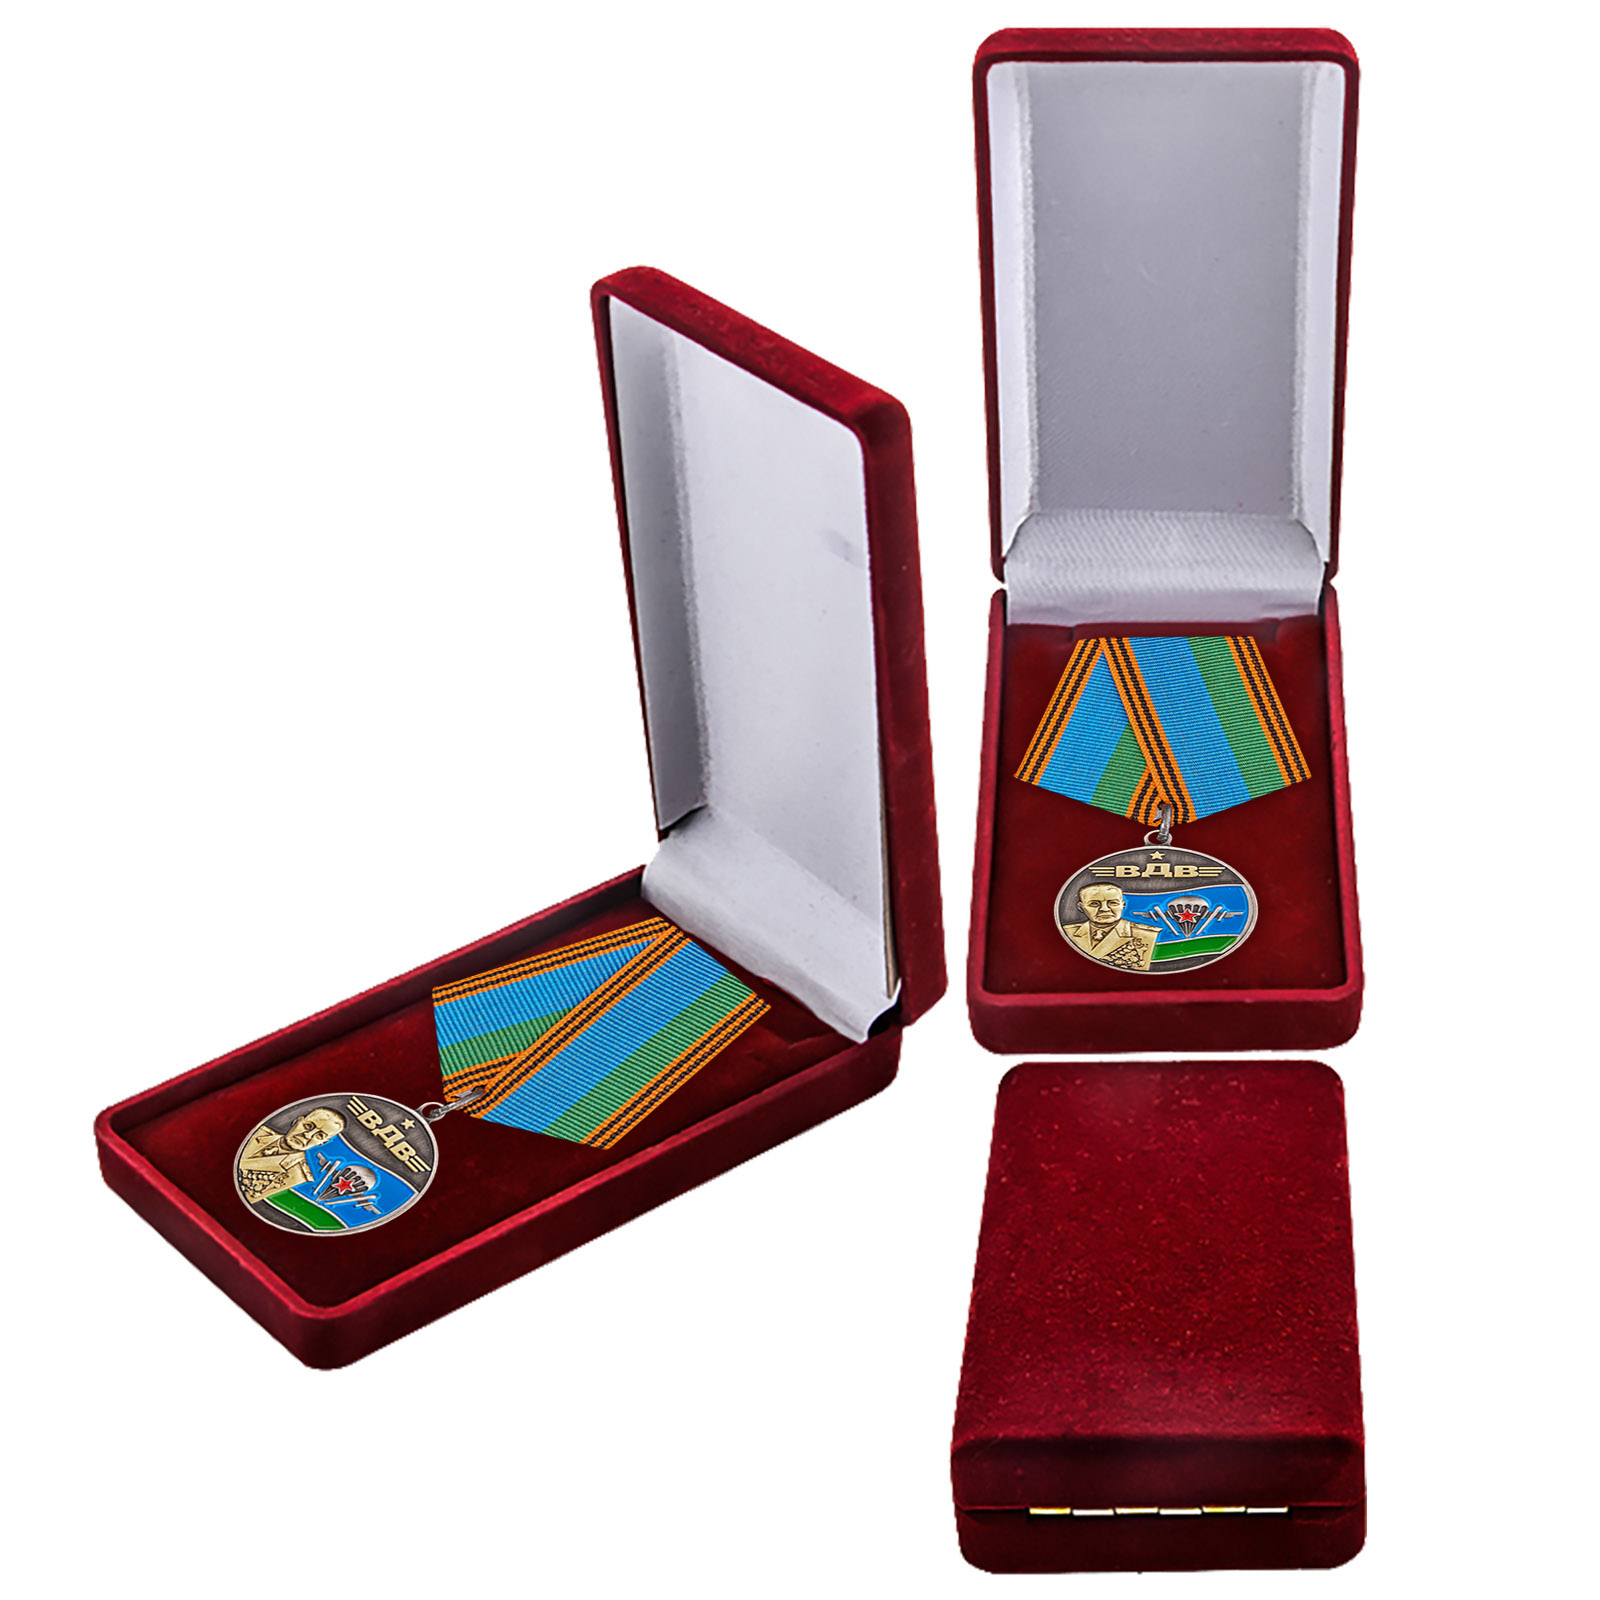 Купить памятную медаль Генерал армии Маргелов онлайн выгодно